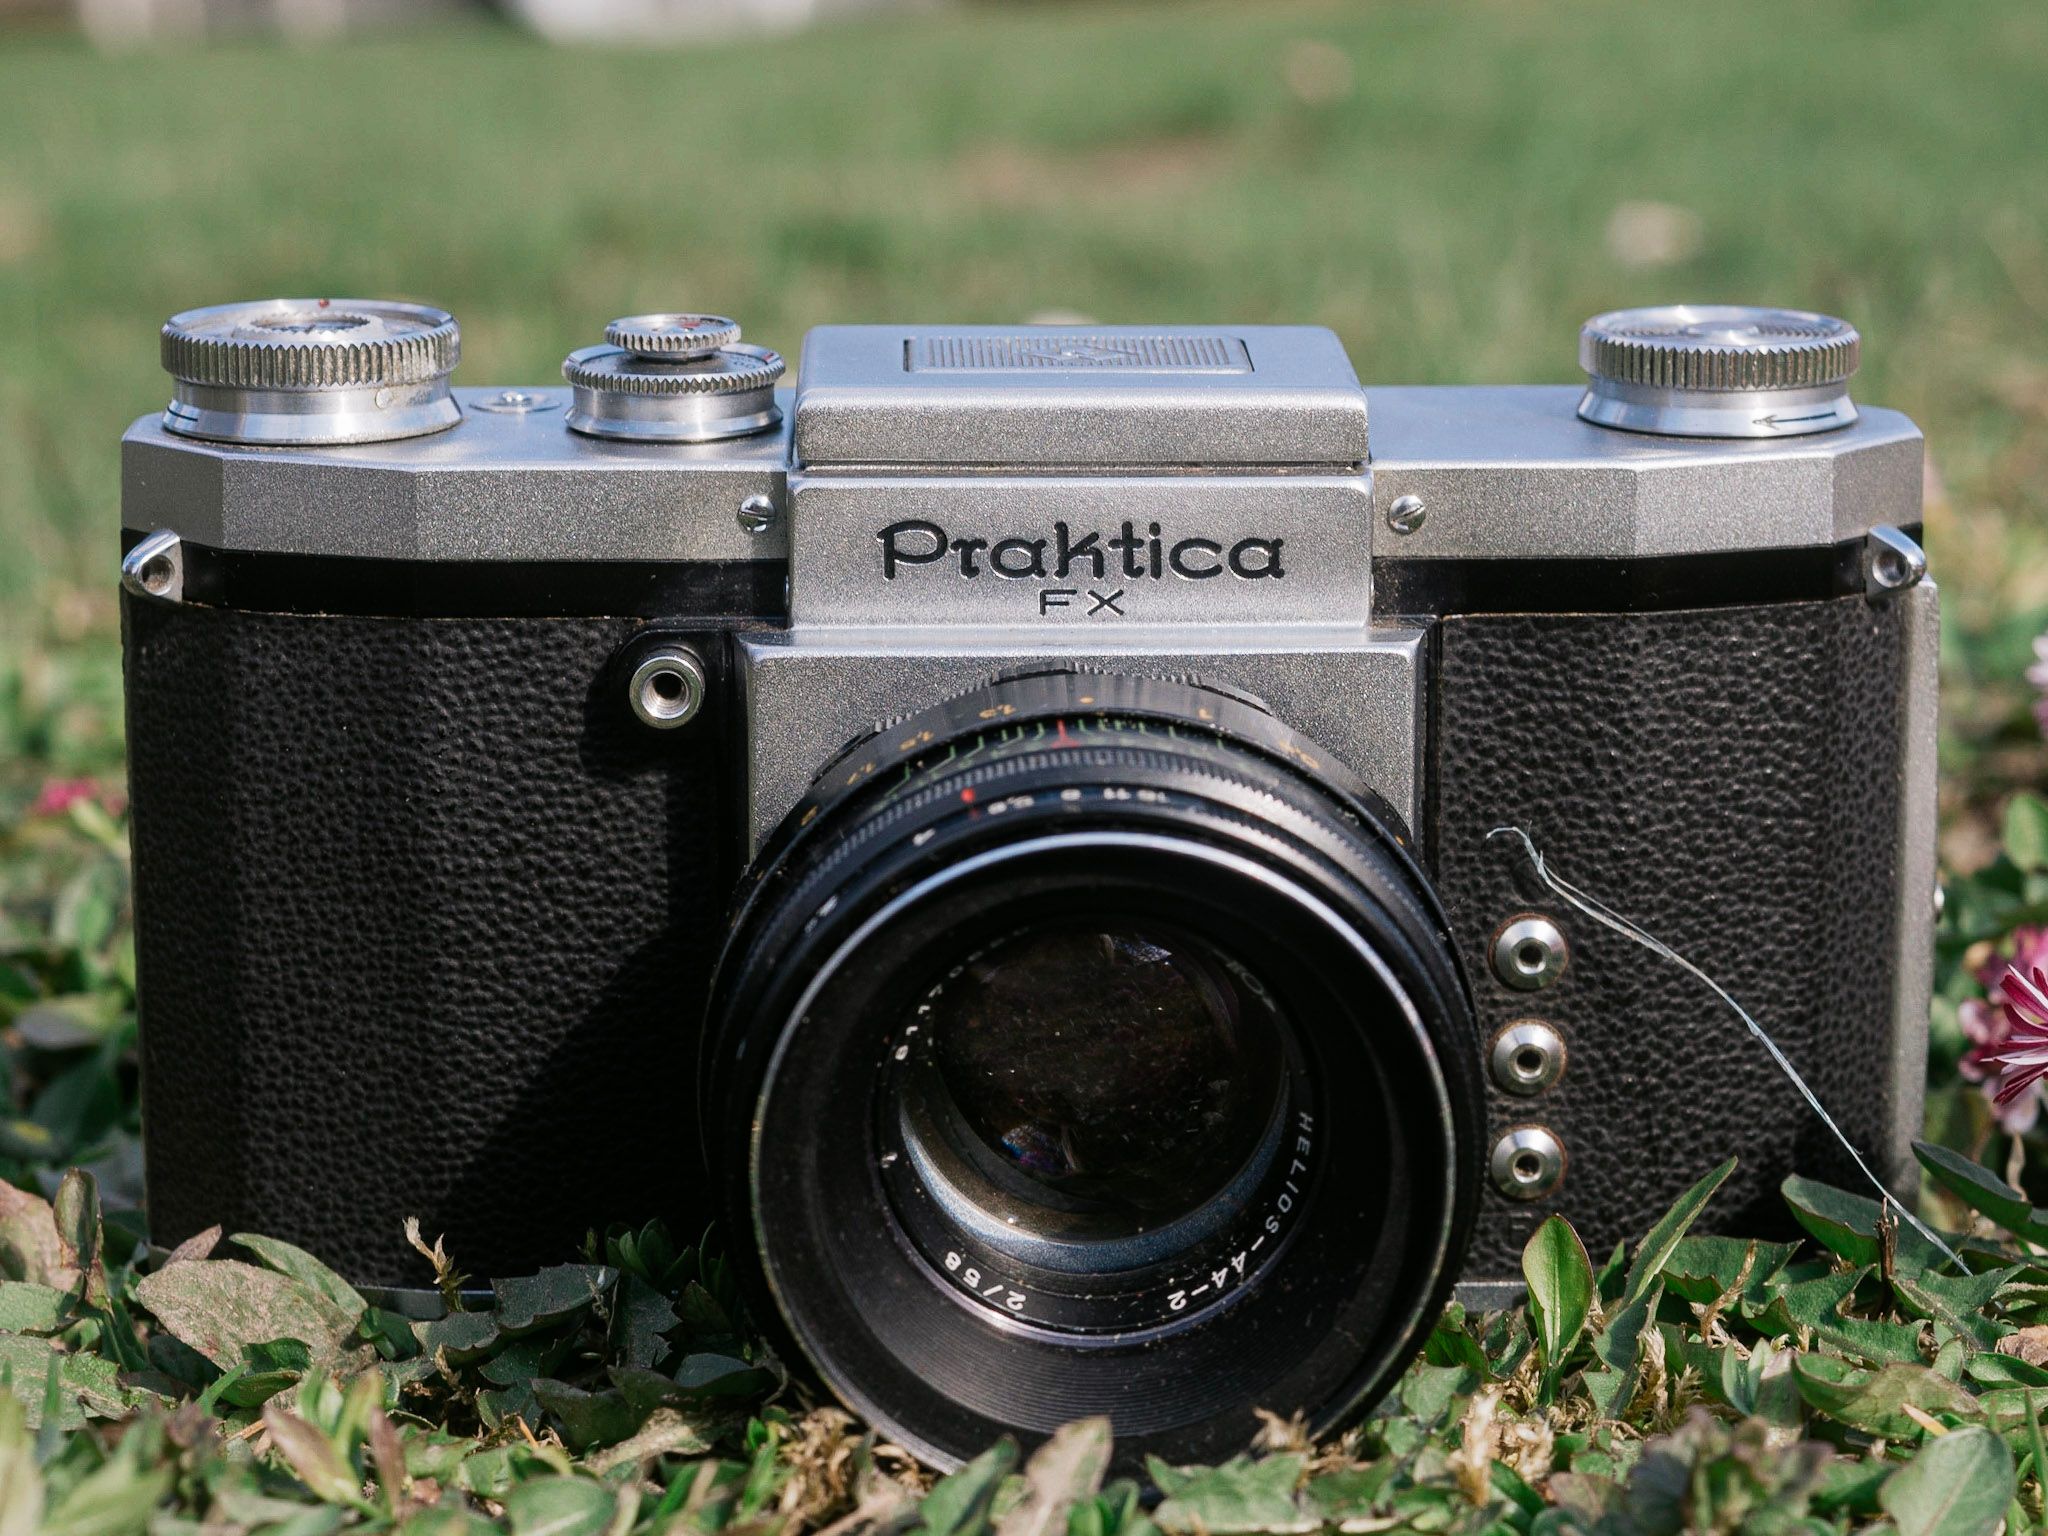 Praktica FX Film Camera Review - 50mmF2